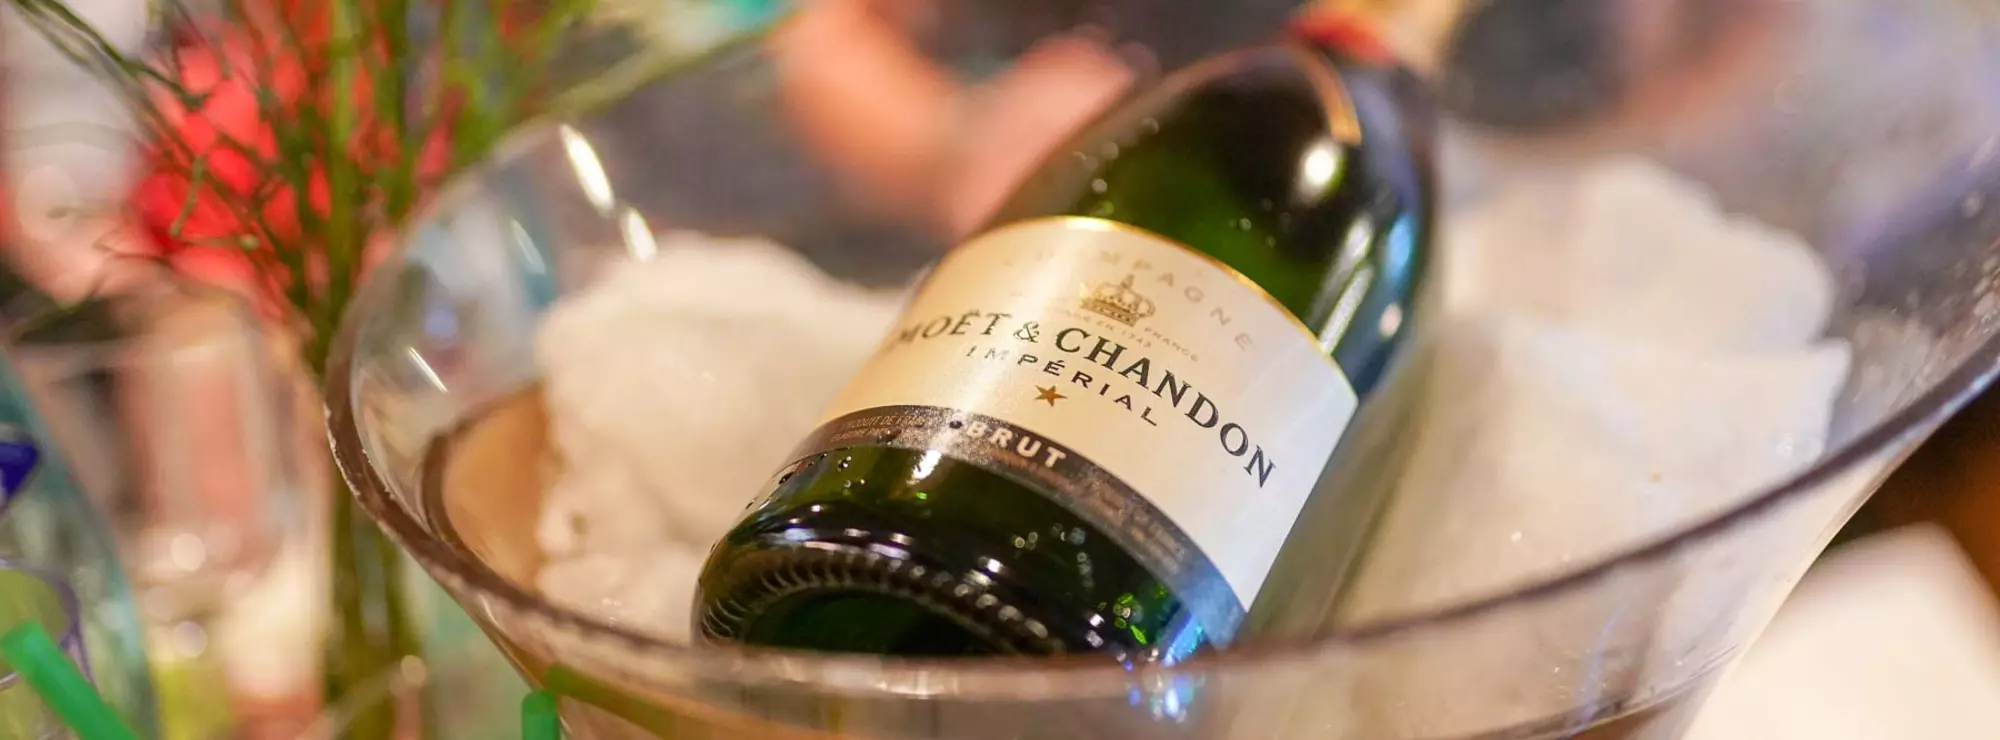 Champagner von Moët & Chandon in einem Flaschenkühler mit Eis